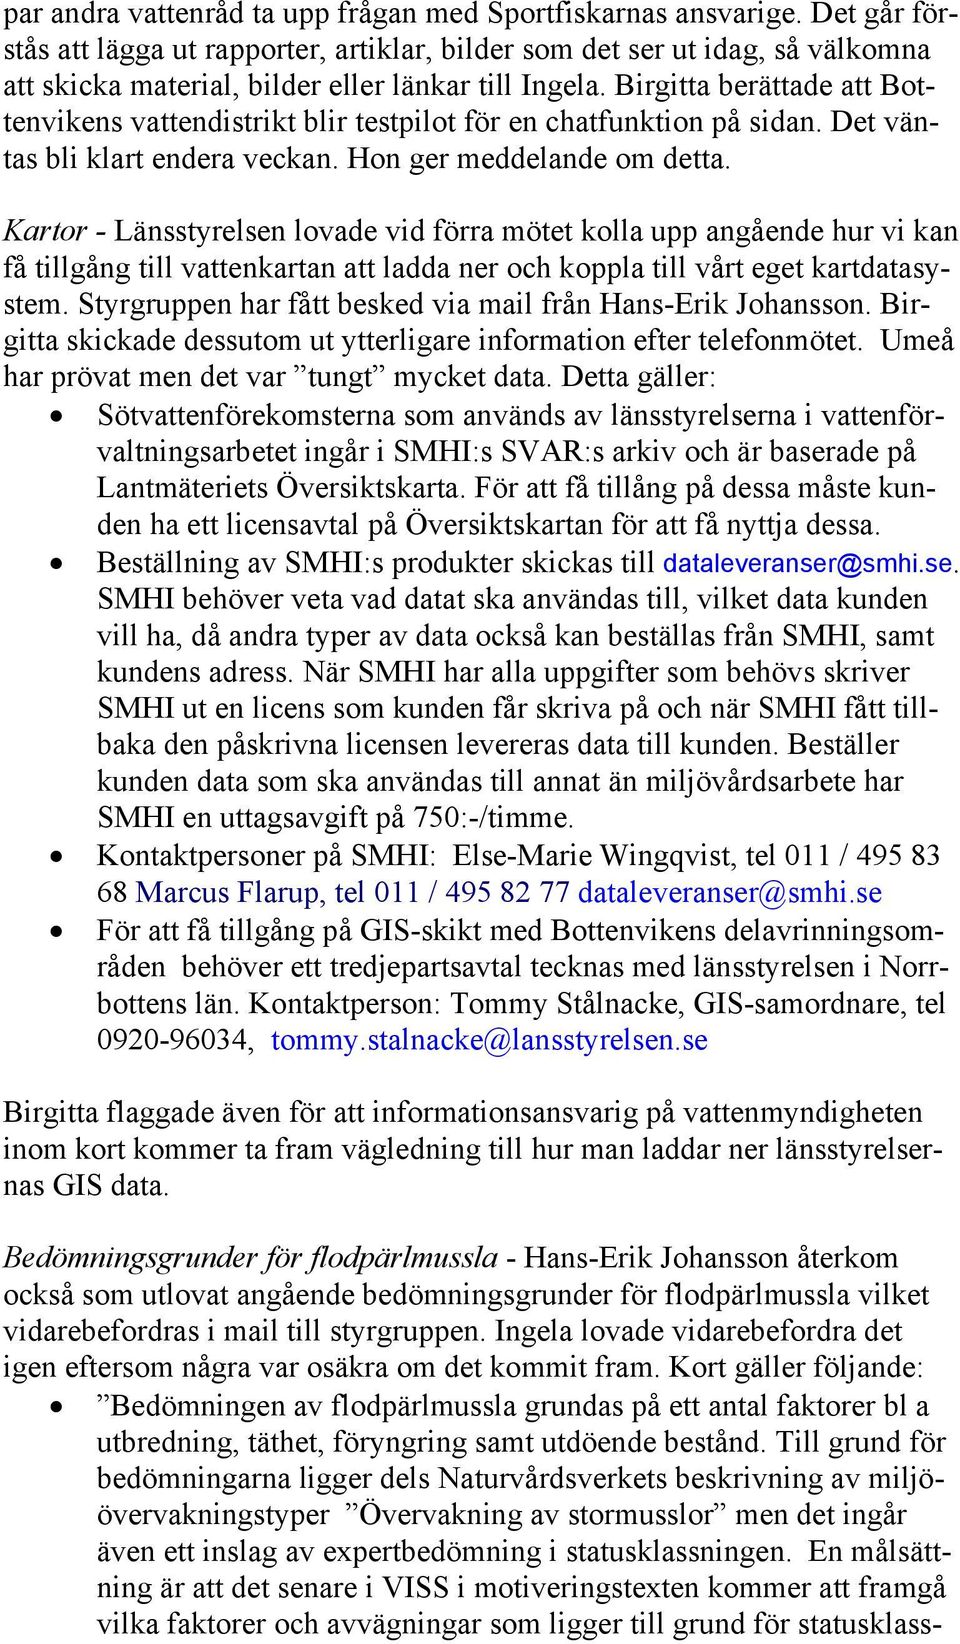 Birgitta berättade att Bottenvikens vattendistrikt blir testpilot för en chatfunktion på sidan. Det väntas bli klart endera veckan. Hon ger meddelande om detta.